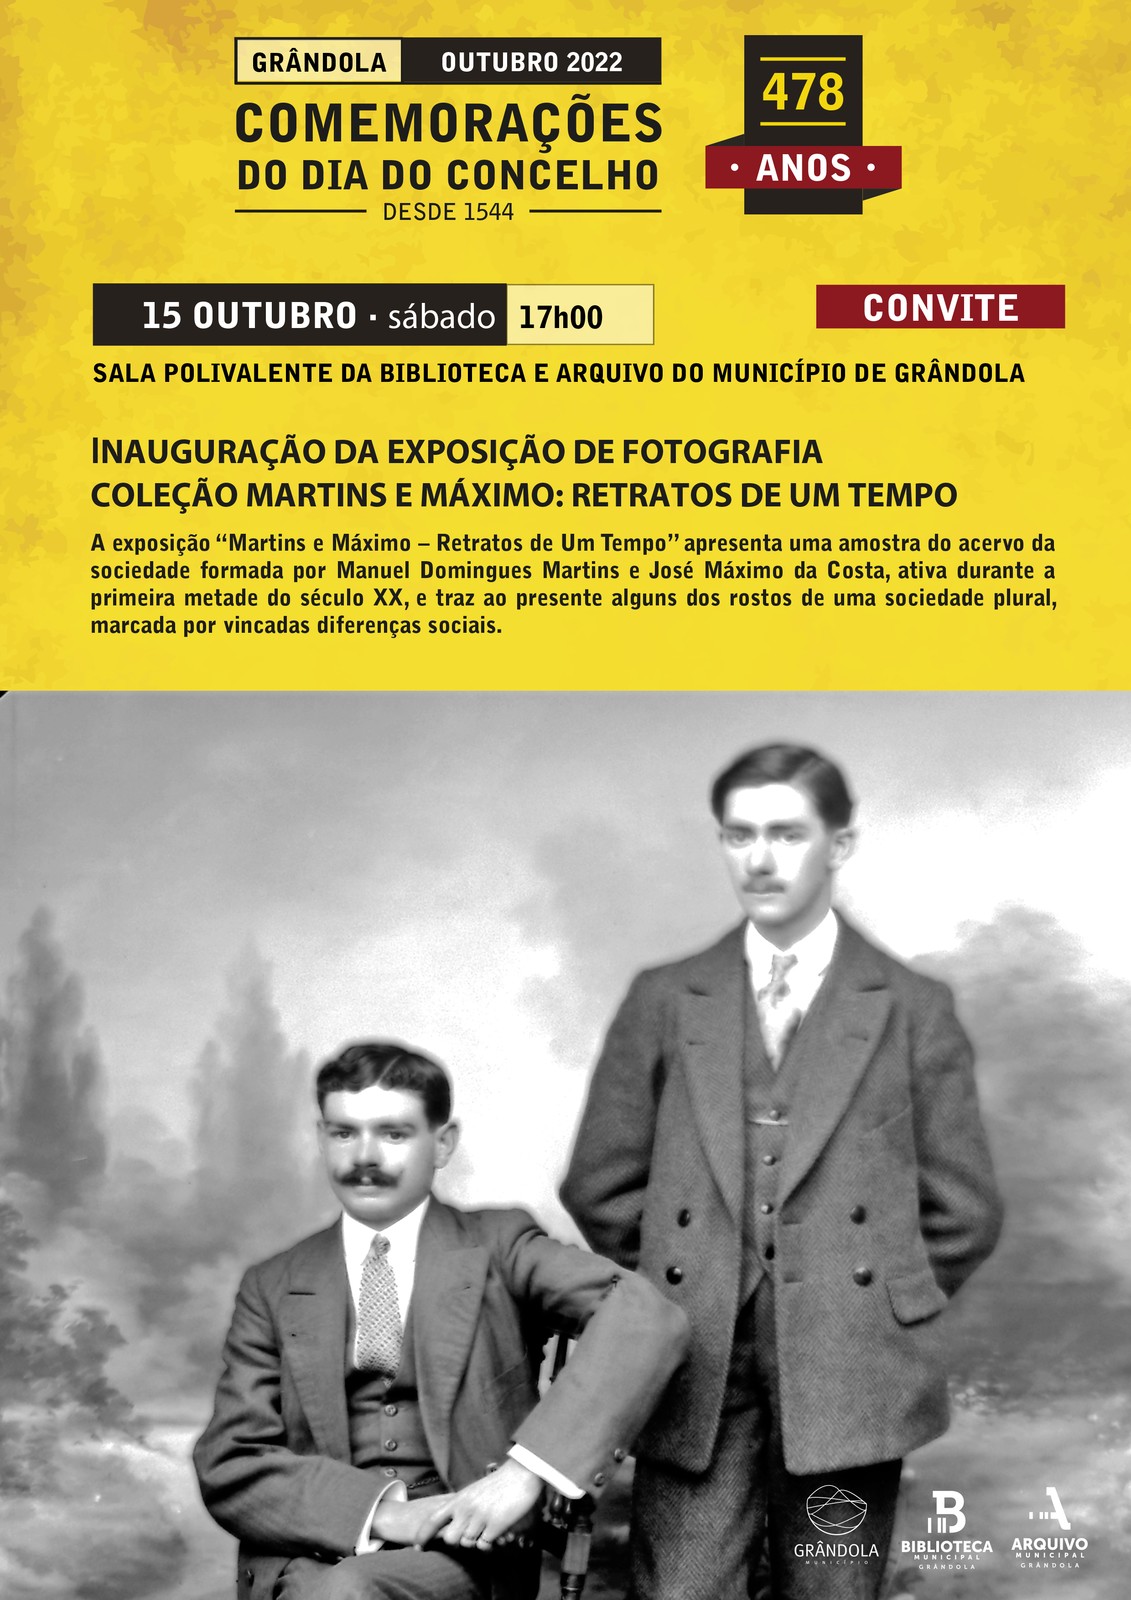 Exposição “Martins e Máximo – Retratos de Um Tempo” inaugura Comemorações do Dia do Concelho